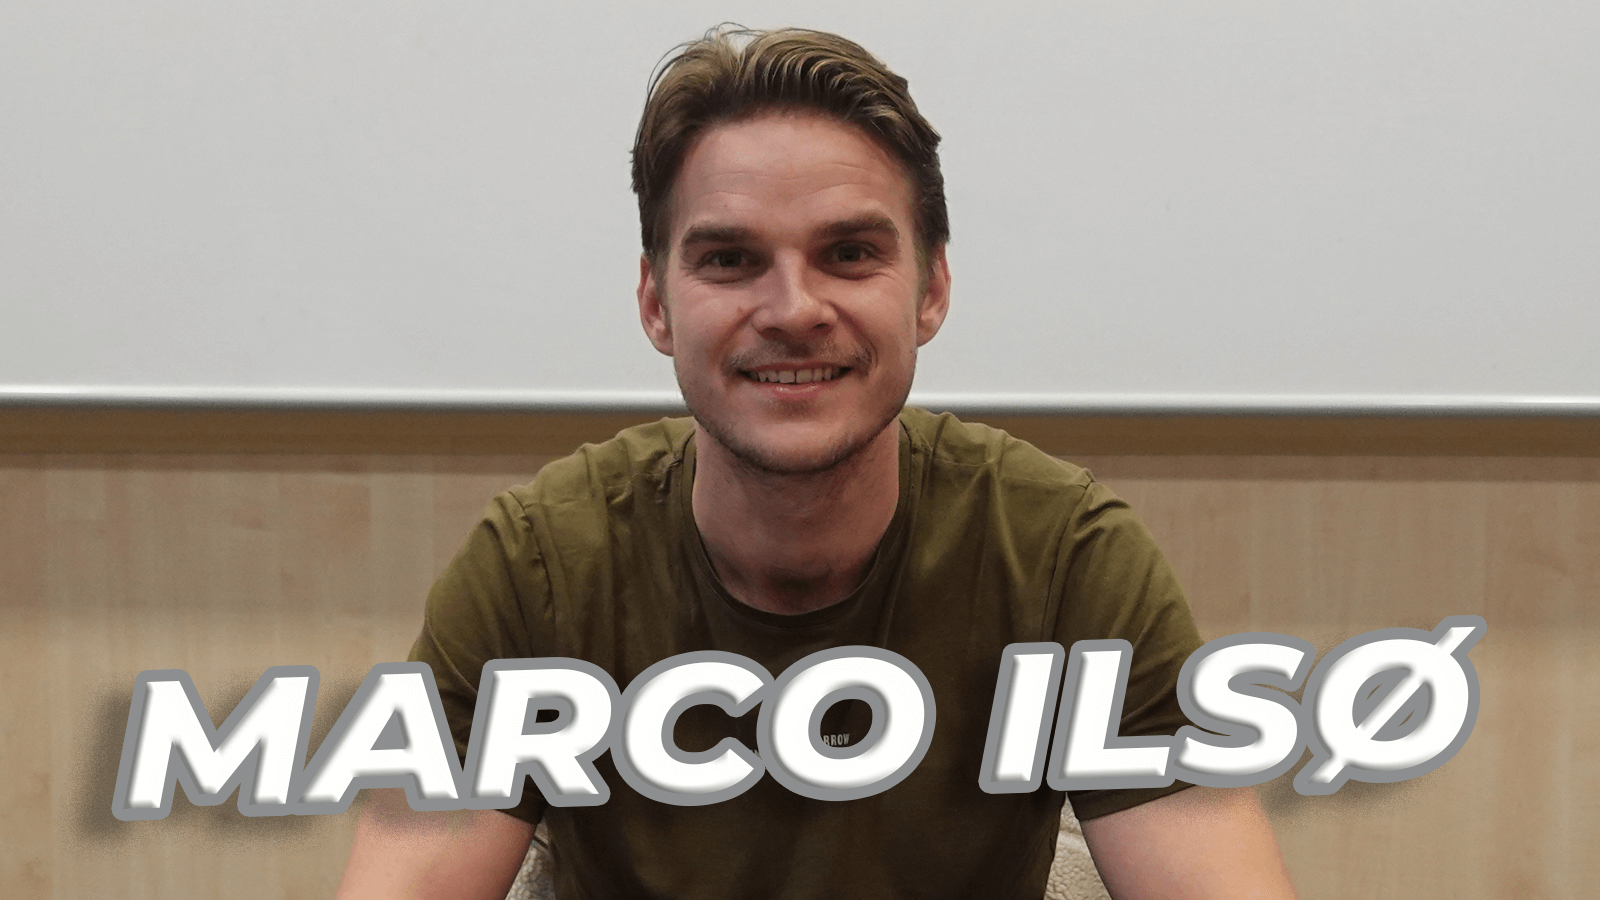 Vikings : Marco Ilsø s’exprime sur Alex Høgh Andersen